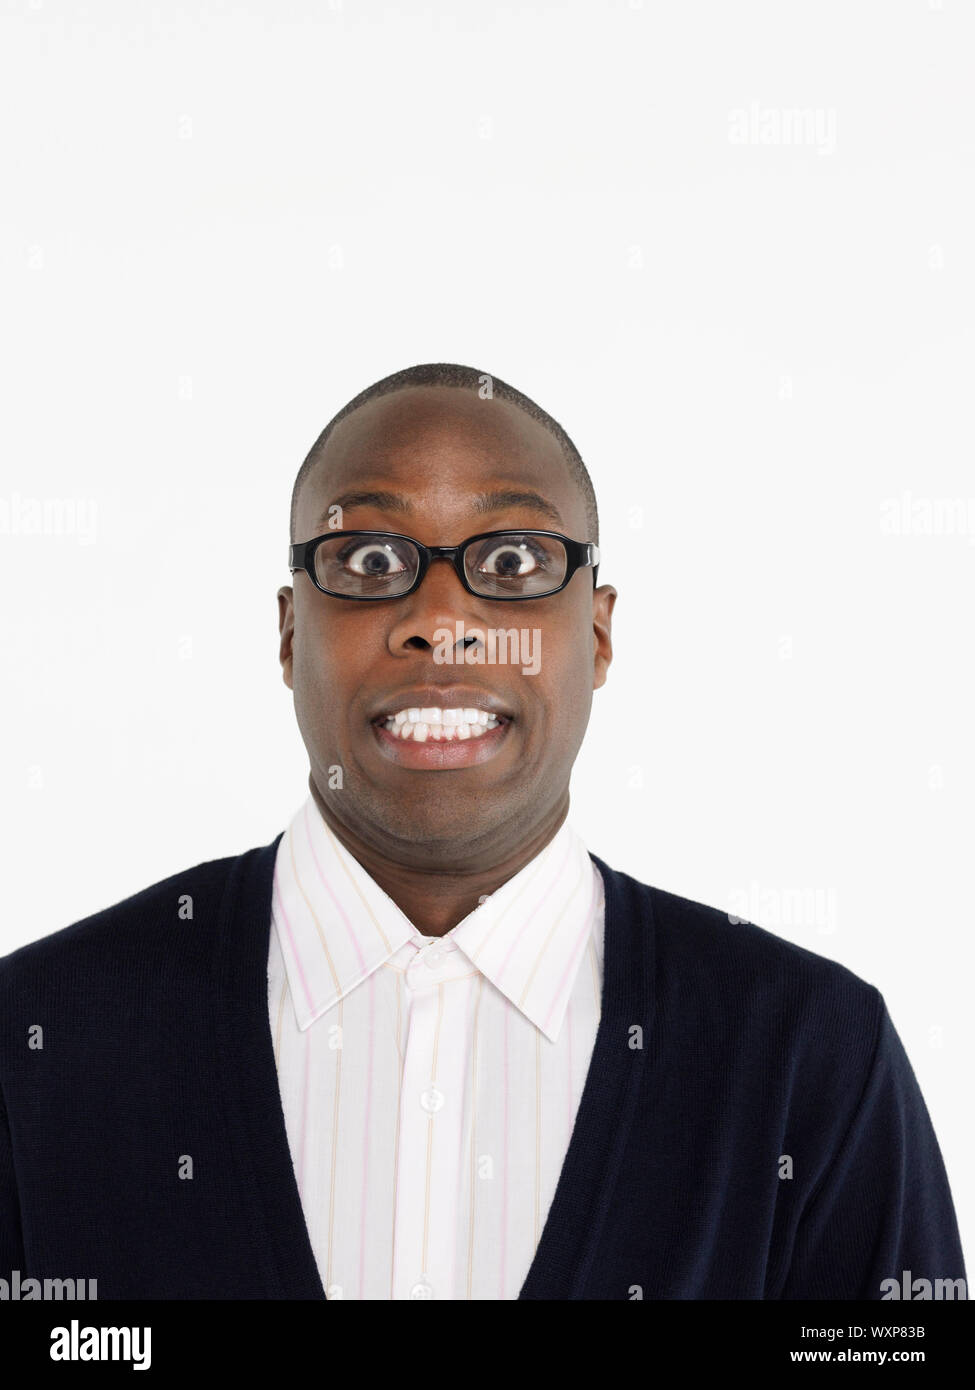 Closeup retrato de un hombre afroamericano con los ojos abiertos contra el fondo blanco. Foto de stock